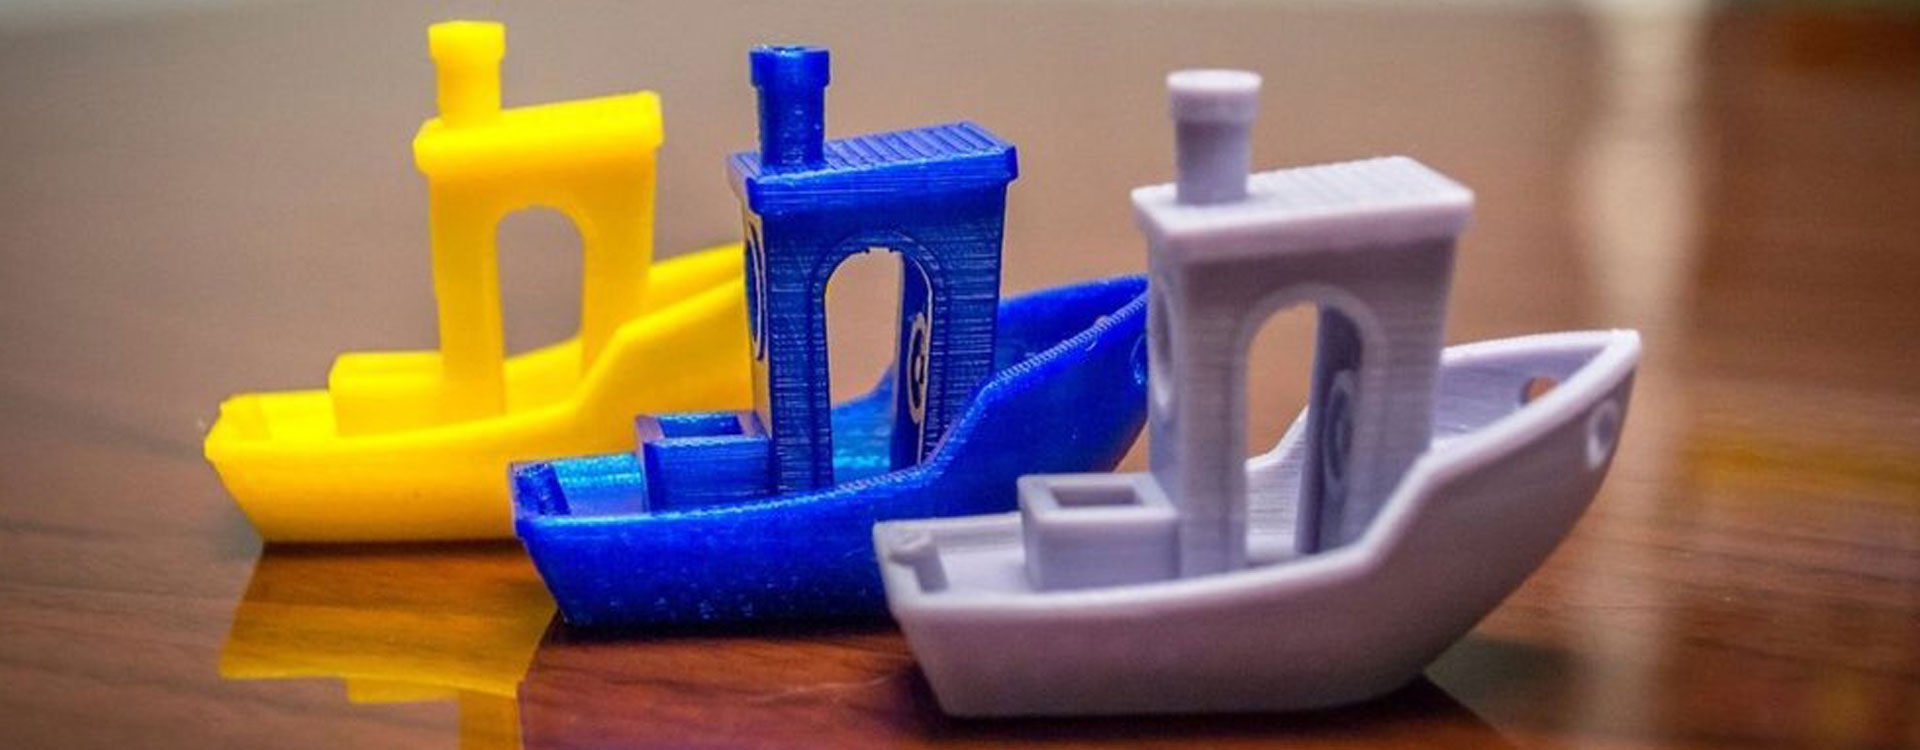 Лучшие модели для тестирования 3D-печати на Ender-3 (Pro/V2)